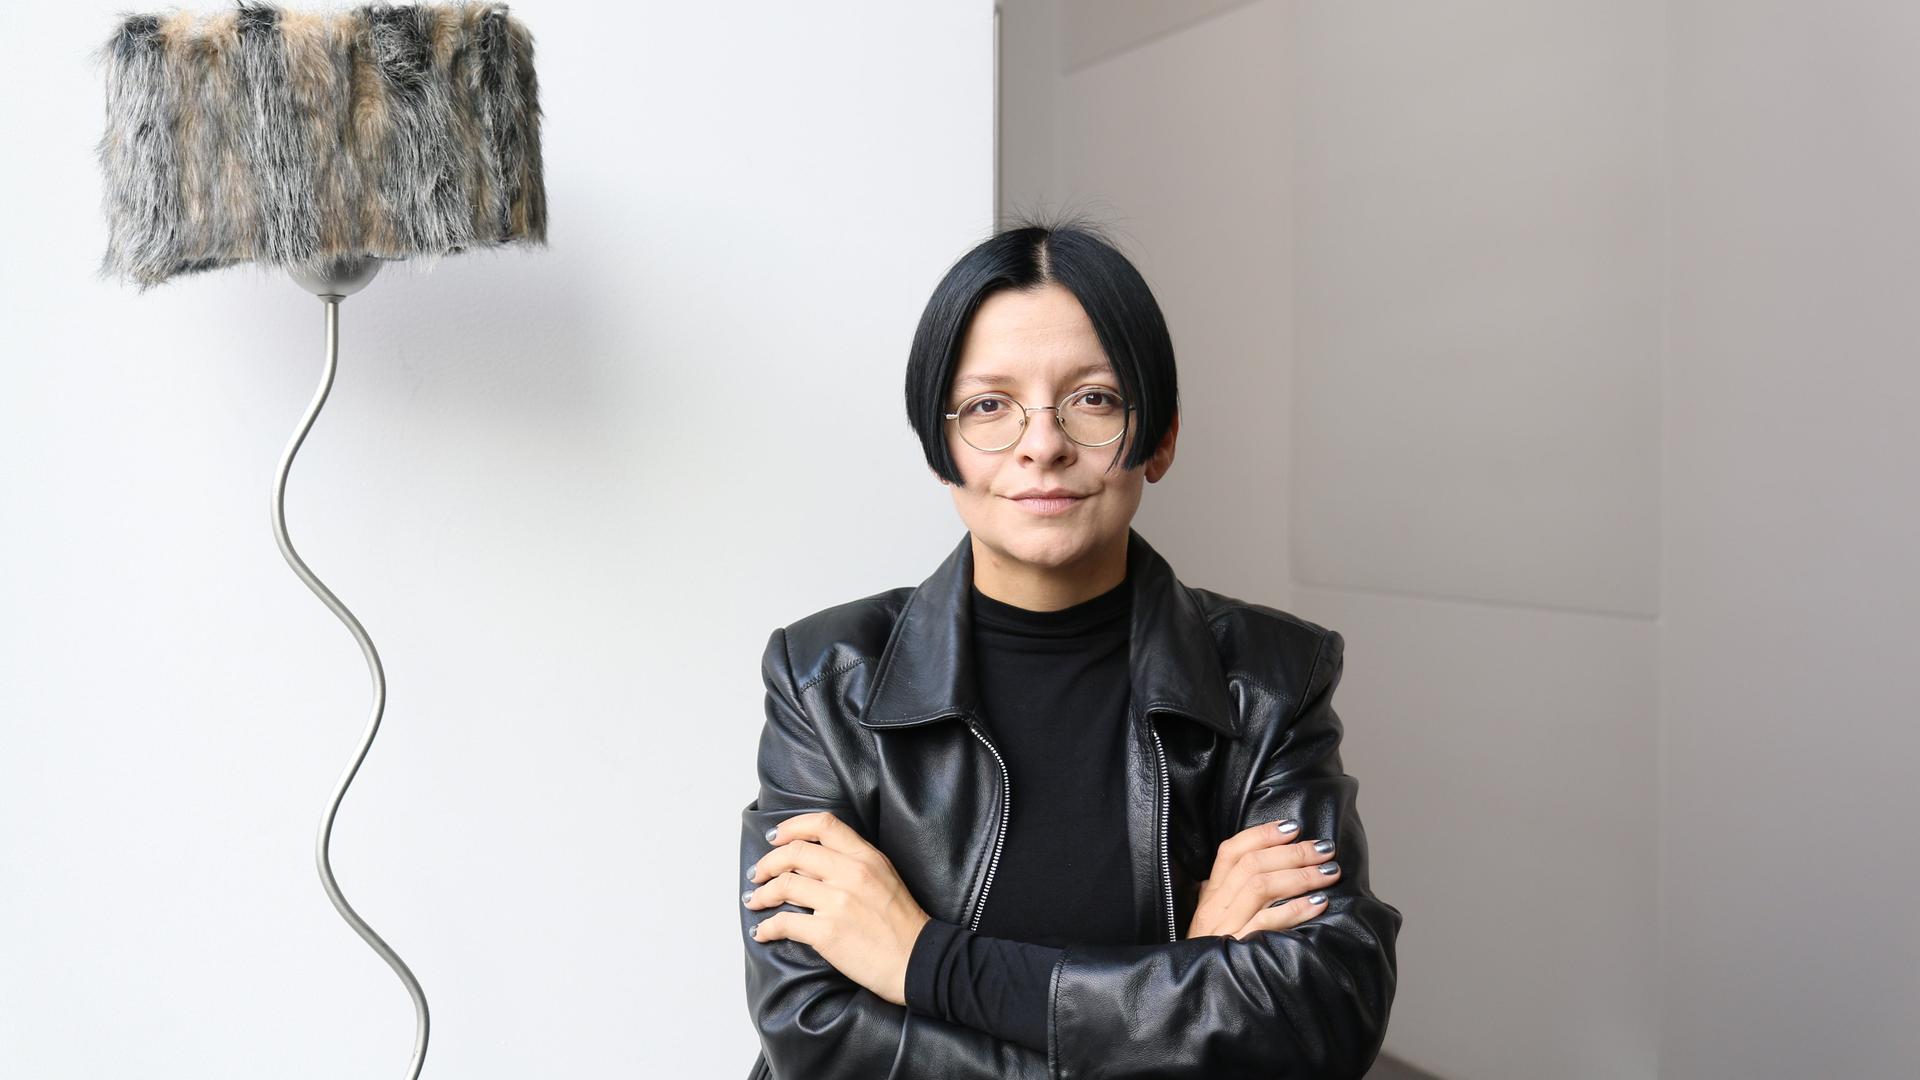 Die Installationskünstlerin Henrike Naumann in schwarzer Lederjacke vor einem ihrer Werke. 
